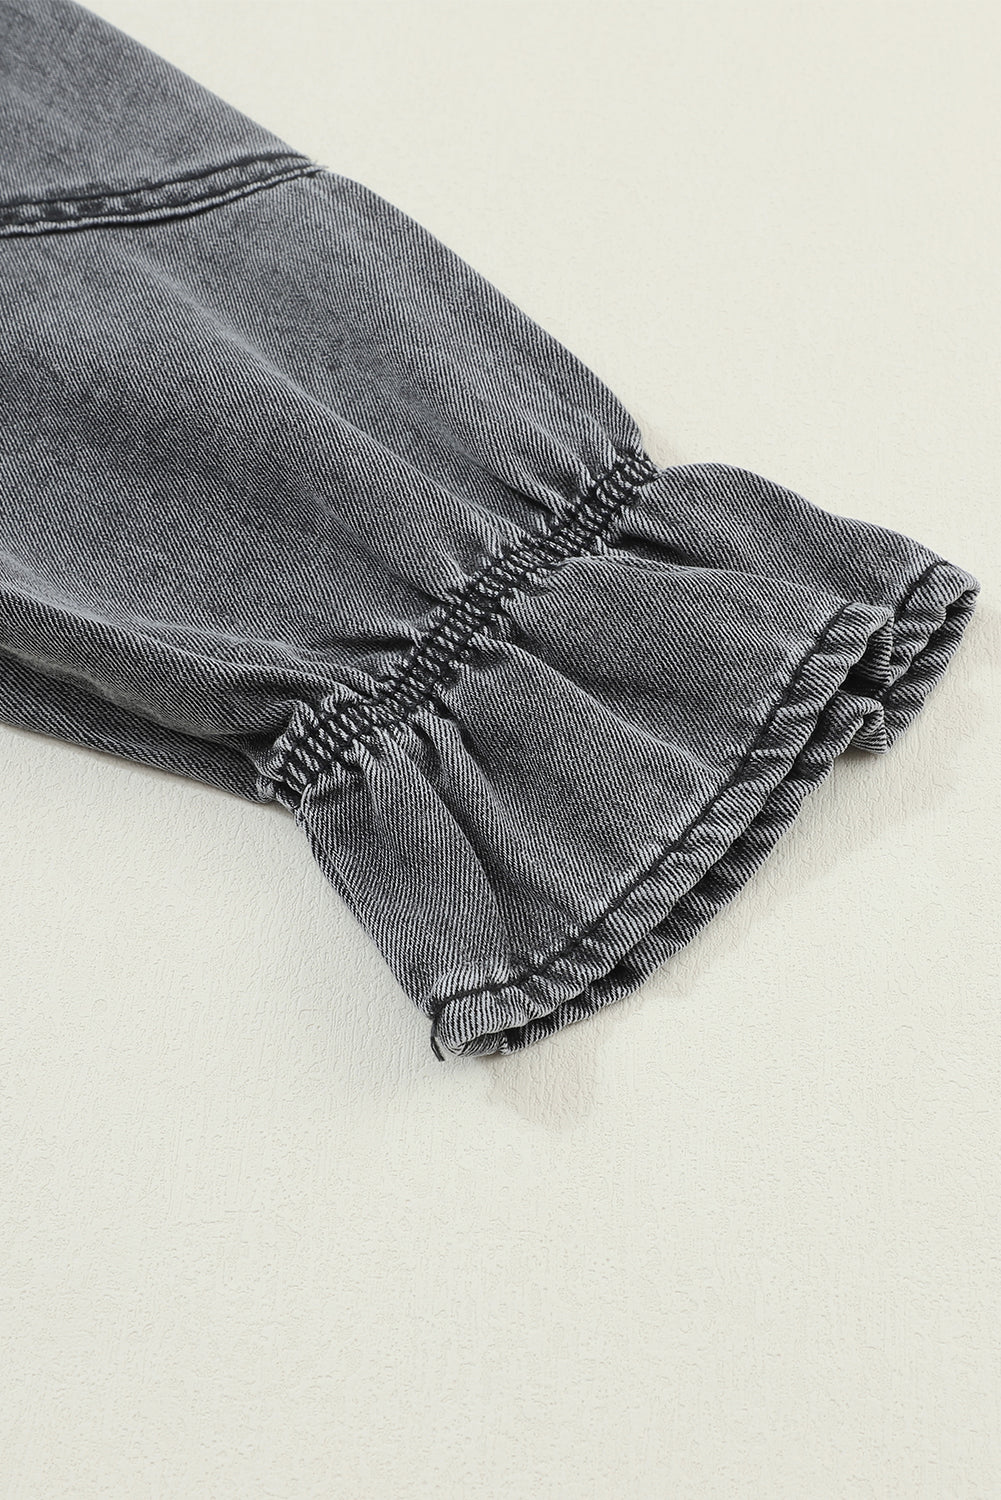 Mini-robe en jean boutonnée grise à manches longues